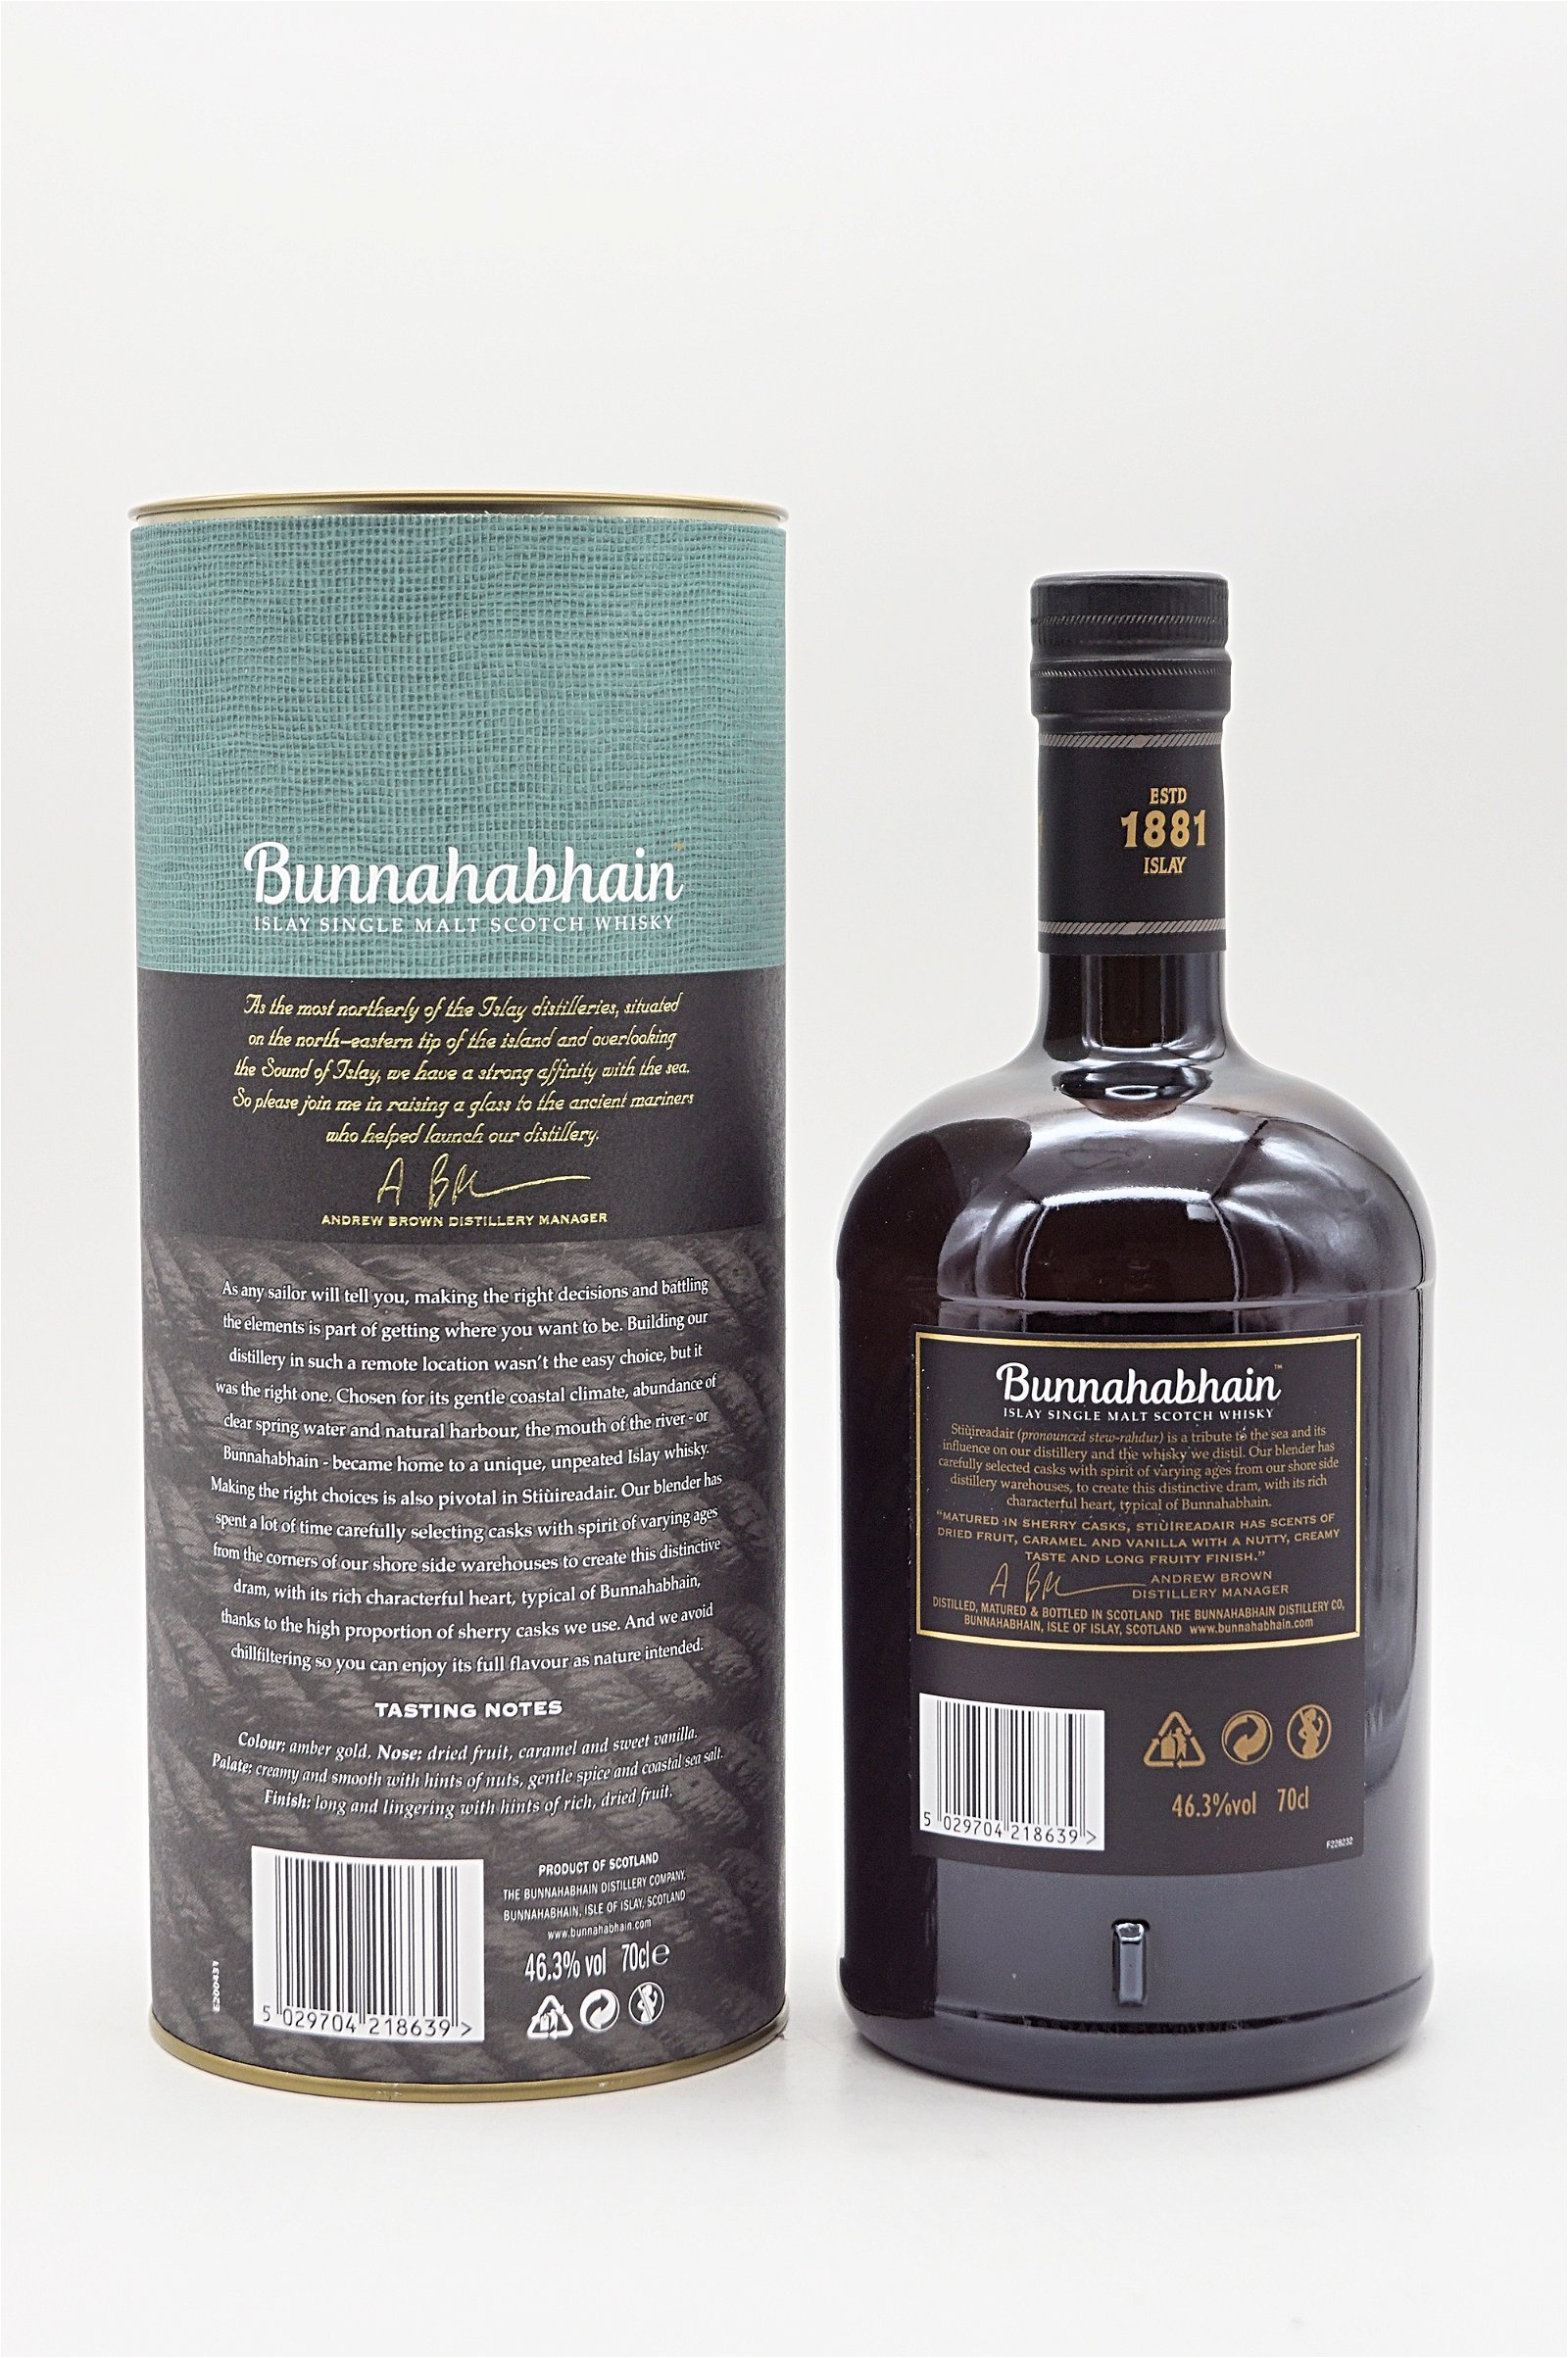 Bunnahabhain Stiuireadair Single Malt Scotch Whisky